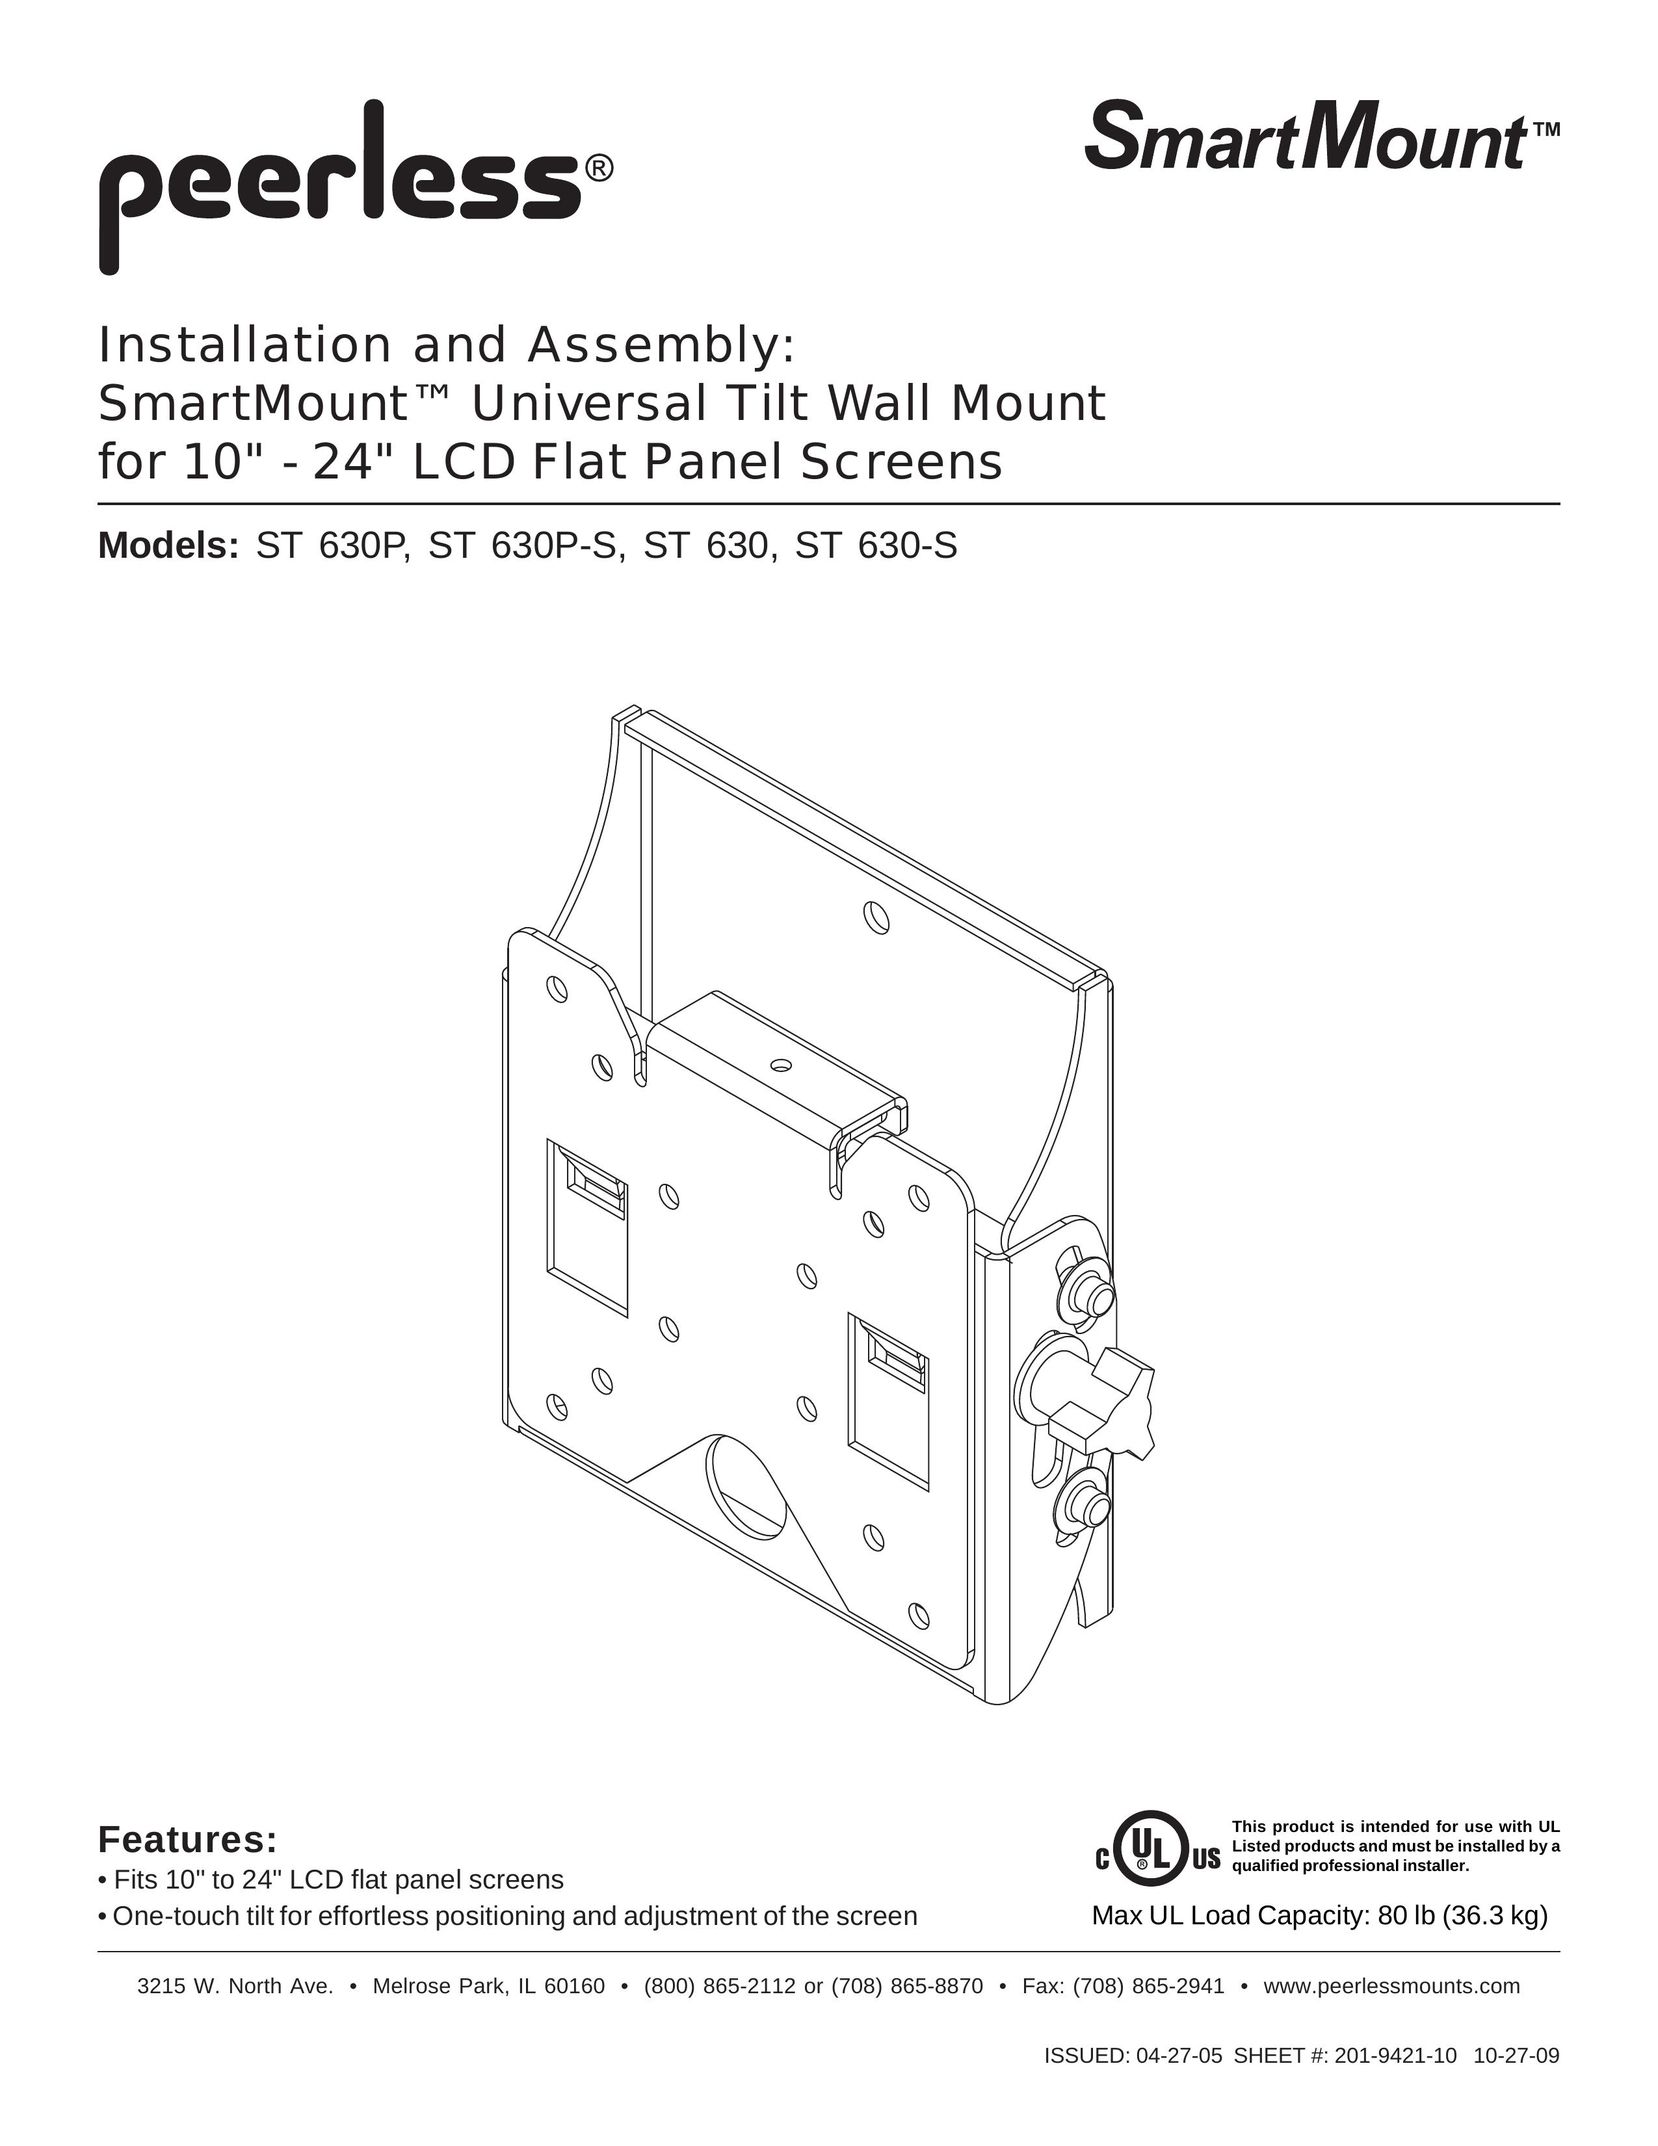 Peerless Industries ST630P Indoor Furnishings User Manual